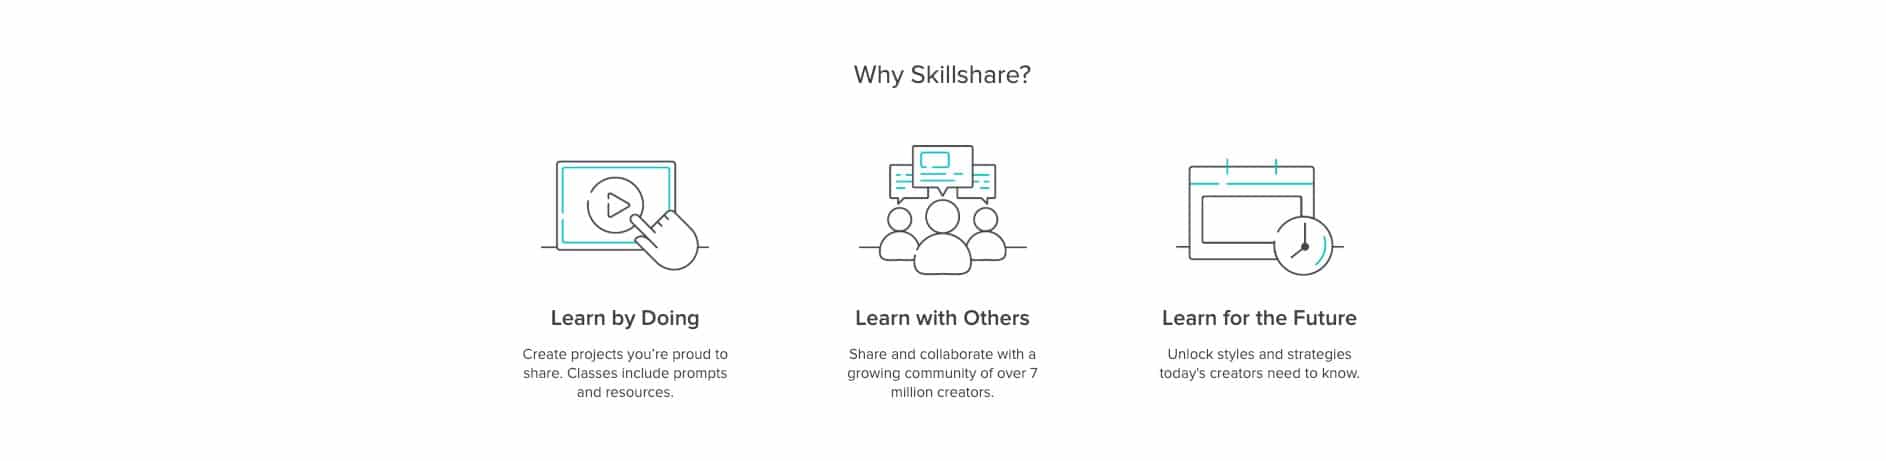 Why Skillshare?